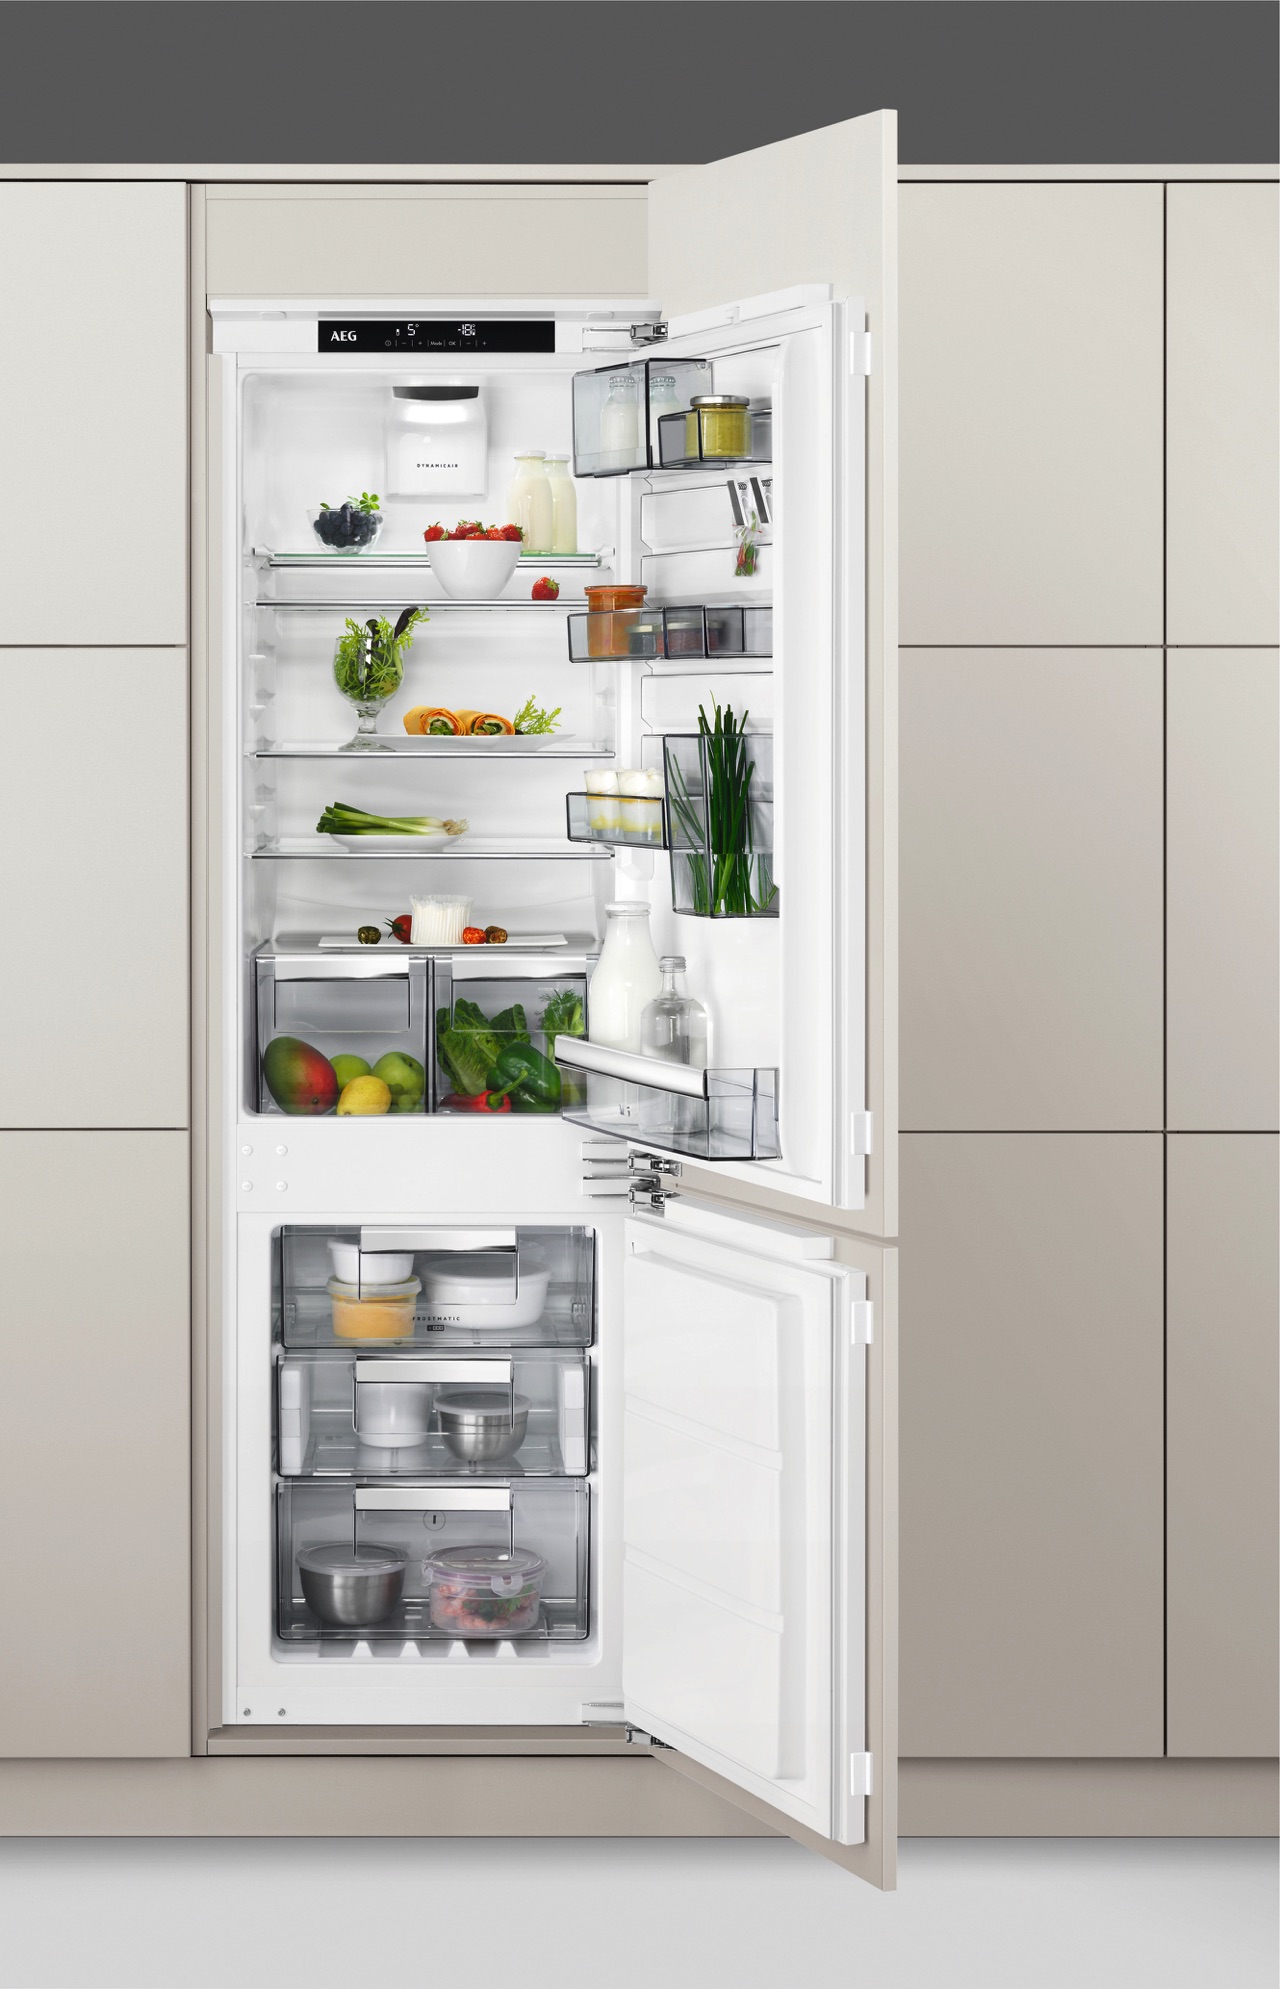 Beim AEG-Kühlschrank ist das Innenleben sehr übersichtlich gestaltet. In den Schubladen des Kühlschranks sollten Obst und Gemüse voneinander getrennt aufbewahrt werden.